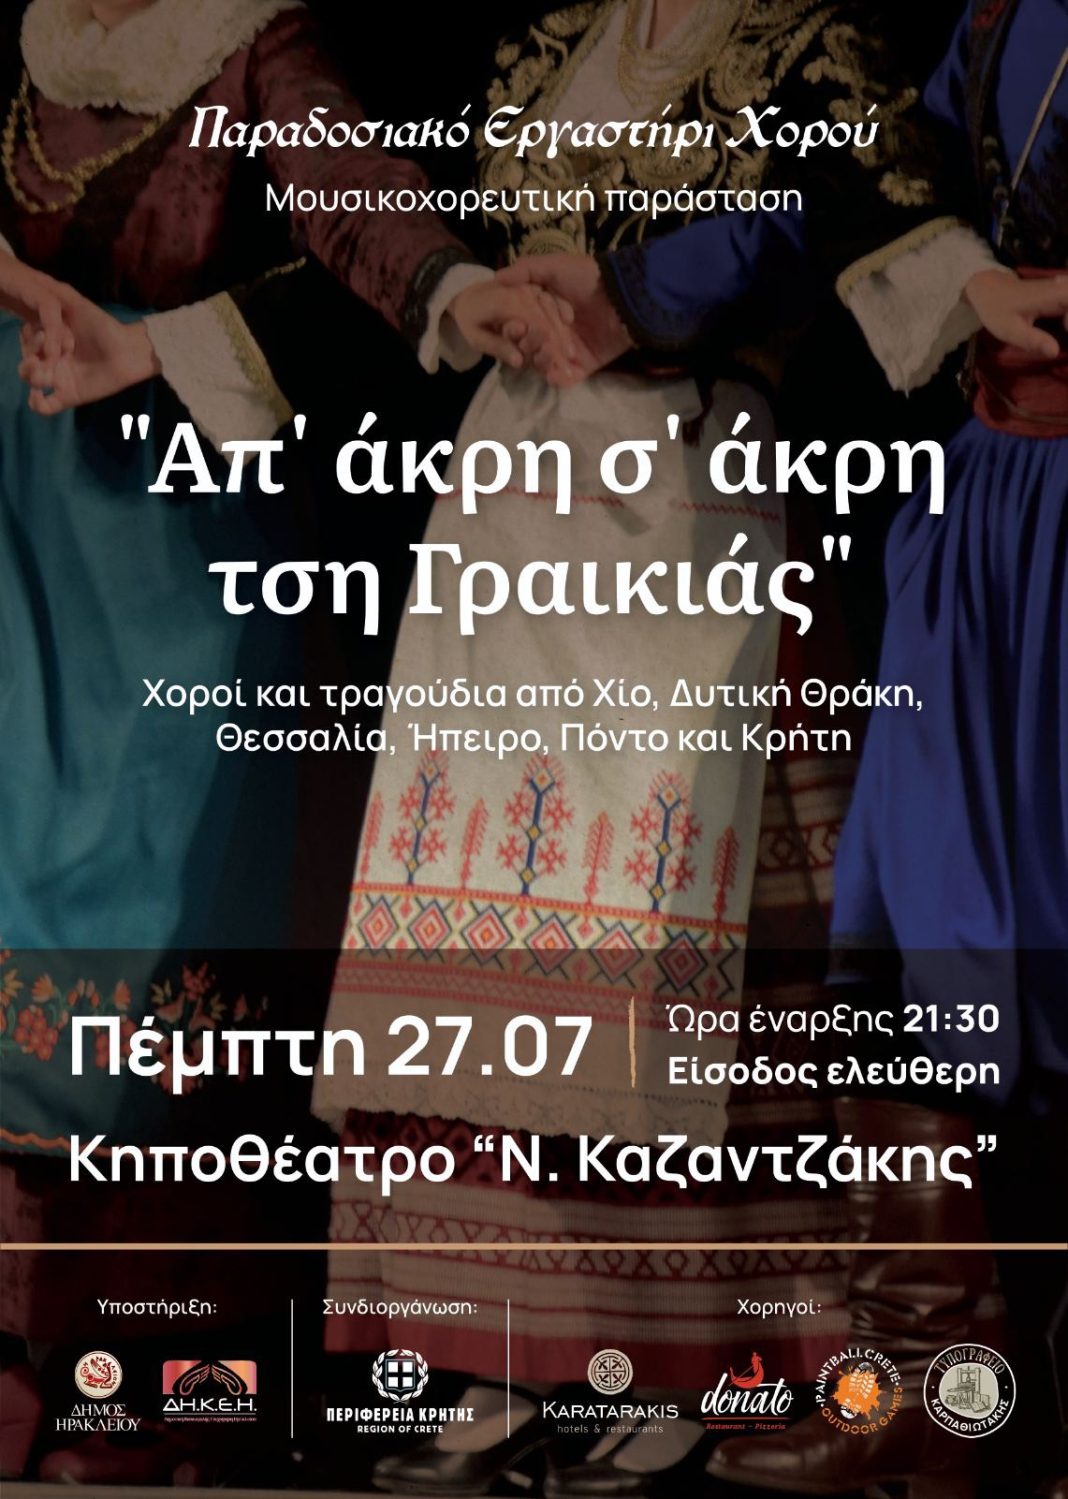 «Απ’ άκρη σ’ άκρη τση Γραικιάς» με 45 χορούς και 130 χορευτές στο κηποθέατρο Νίκος Καζαντζάκης